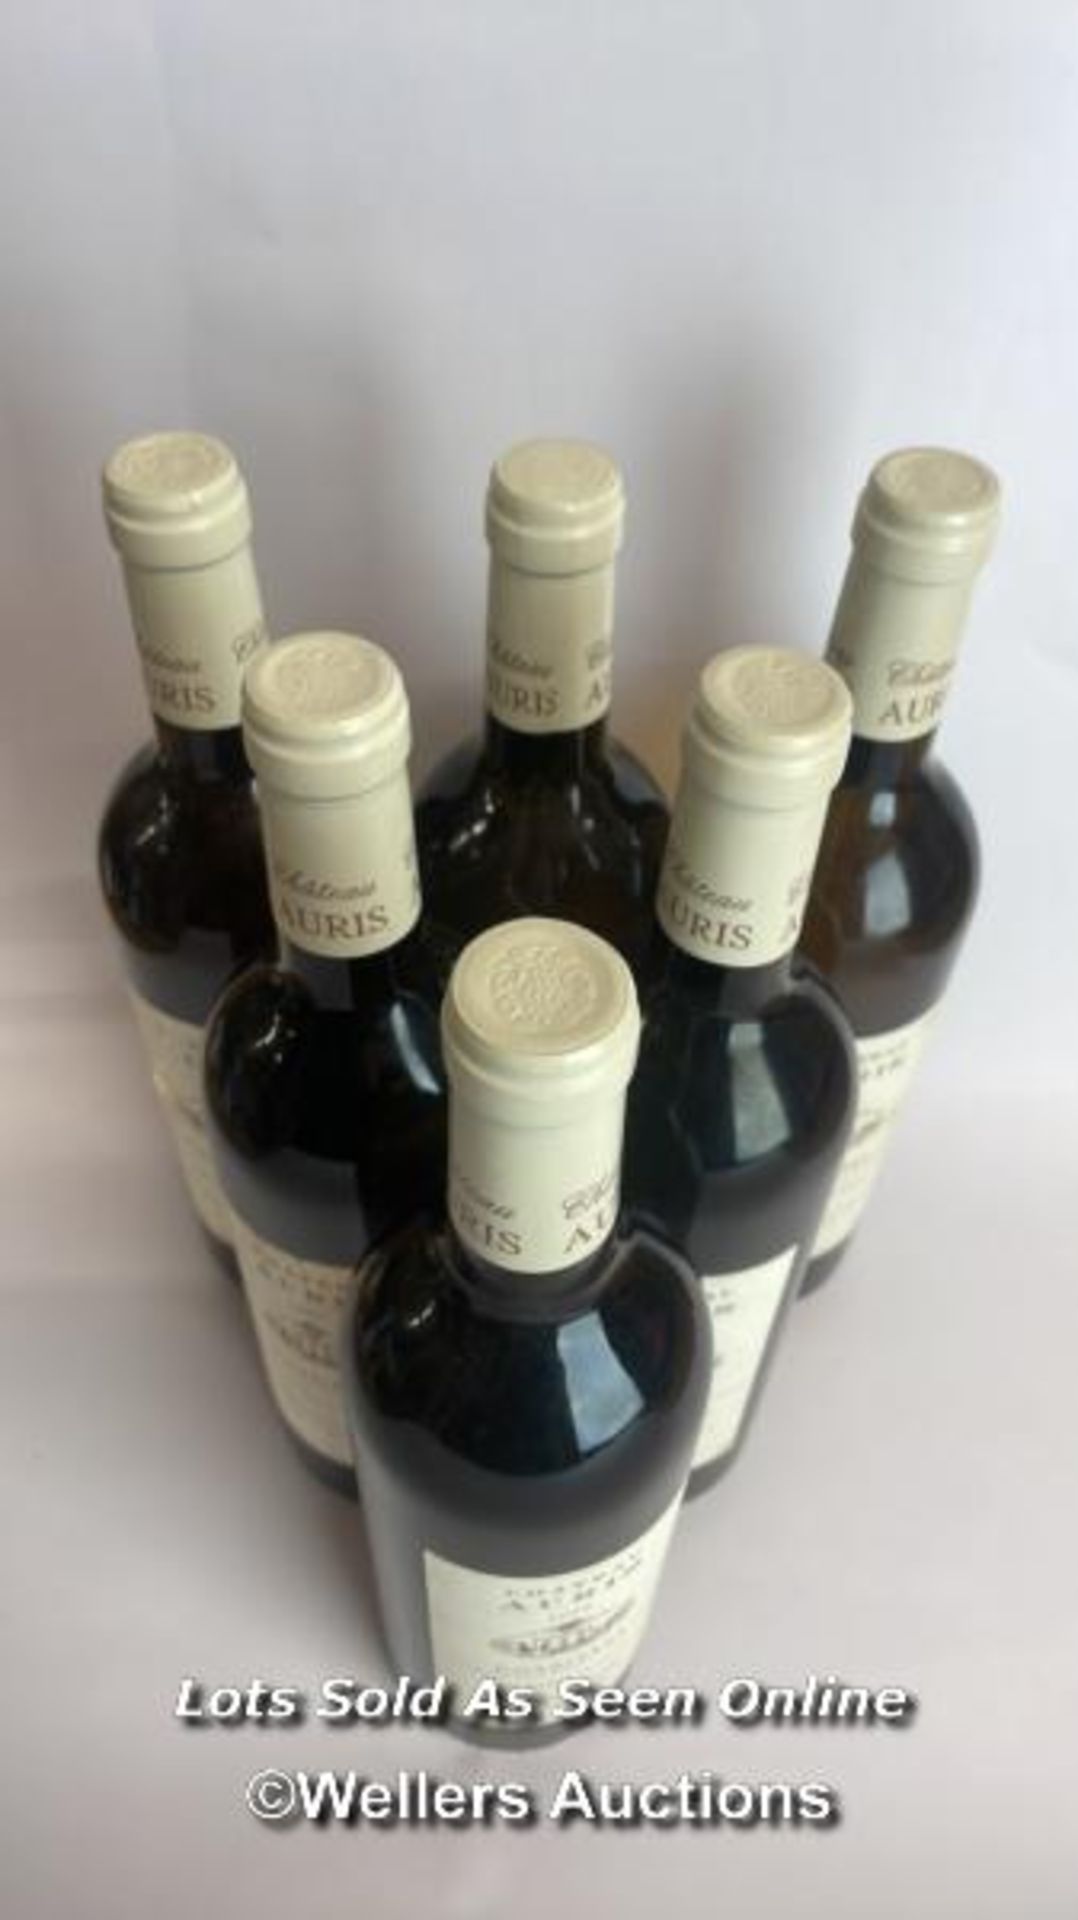 Six bottles of 1999 Chateau Auris Corbieres, Mis En Boutille Au Chateau, 75cl, 12.5% vol / Please - Image 7 of 8